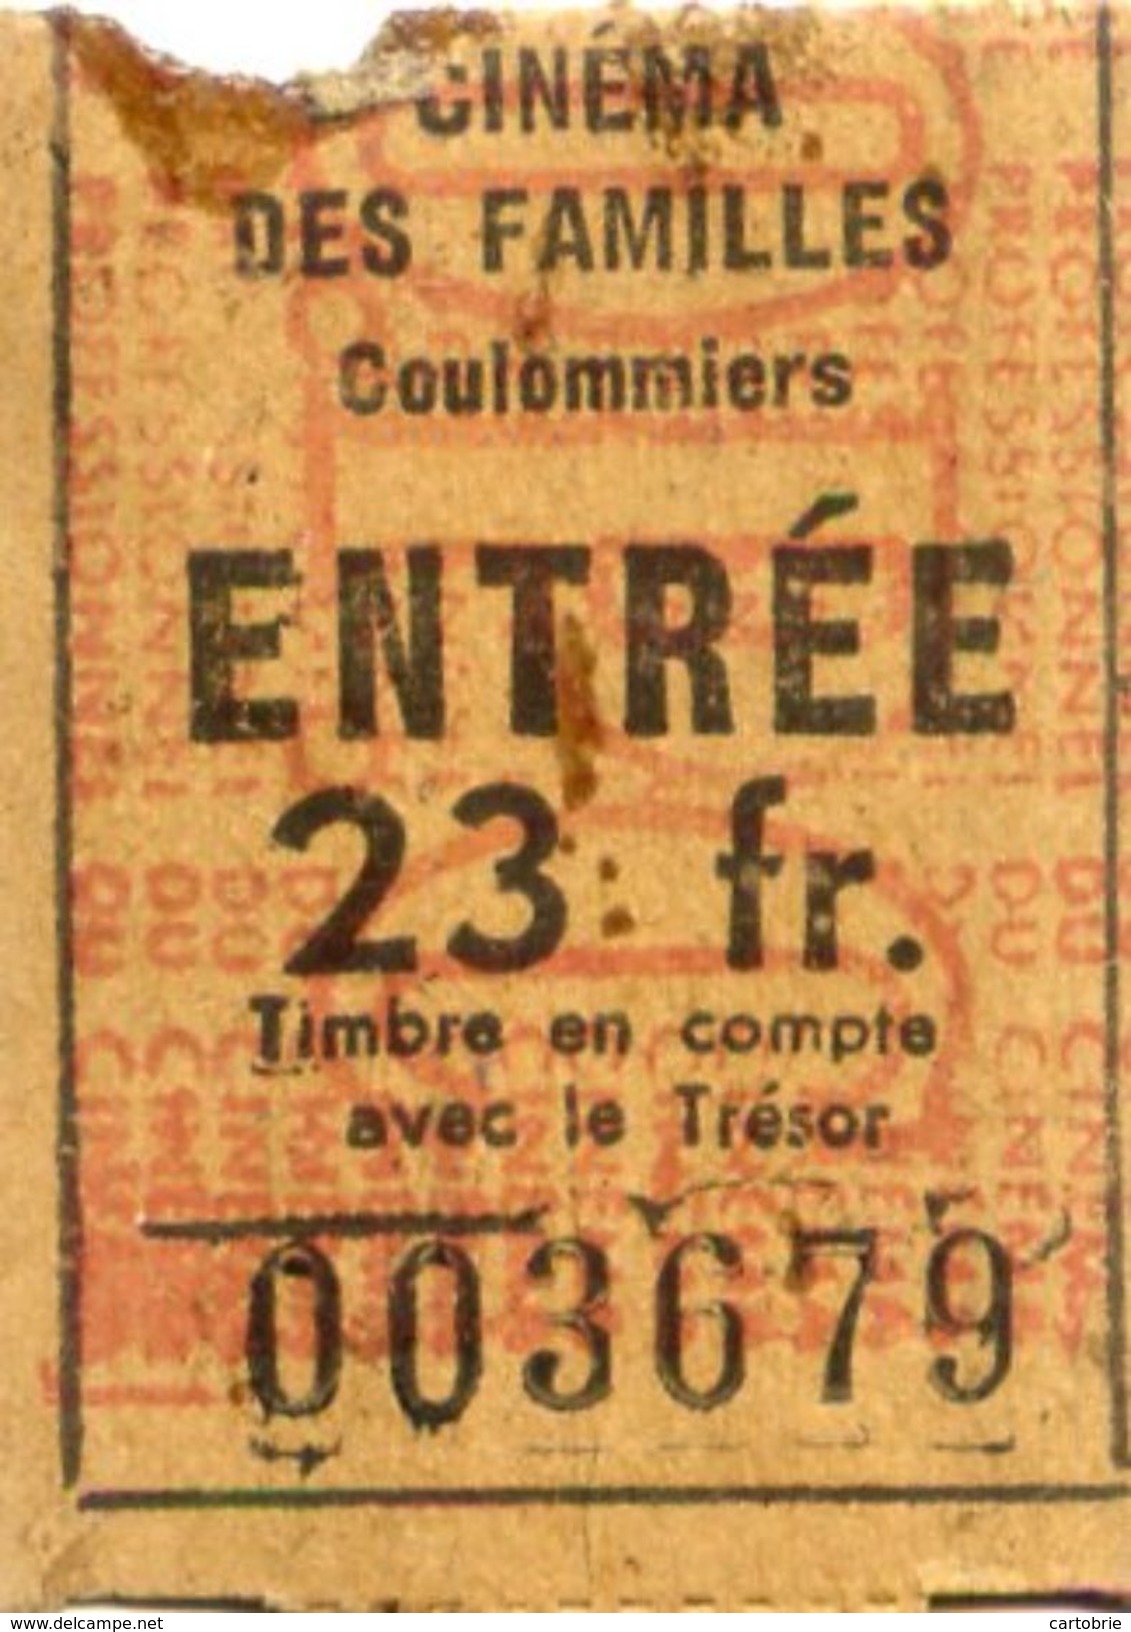 TICKET ENTREE CINÉMA Des FAMILLES COULOMMIERS 23 Fr - Tickets - Vouchers